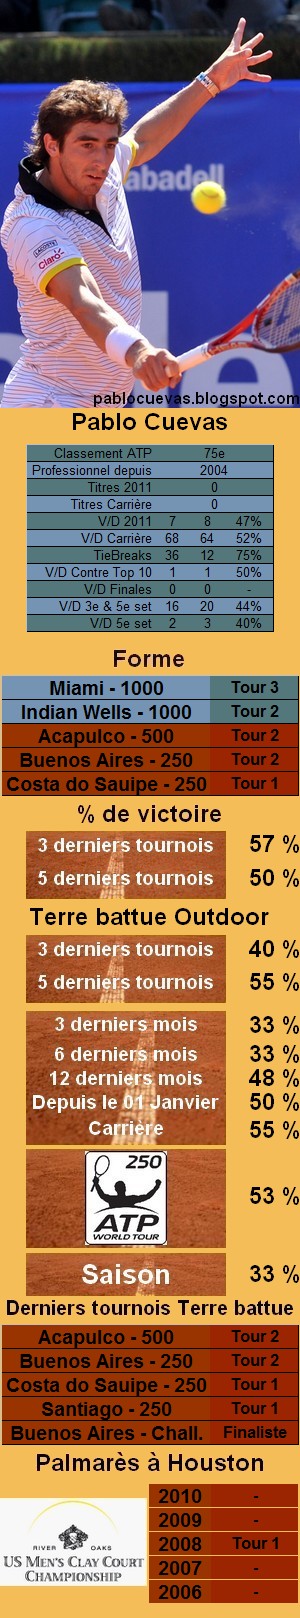 Les statistiques tennis de Pablo Cuevas pour le tournoi de Houston